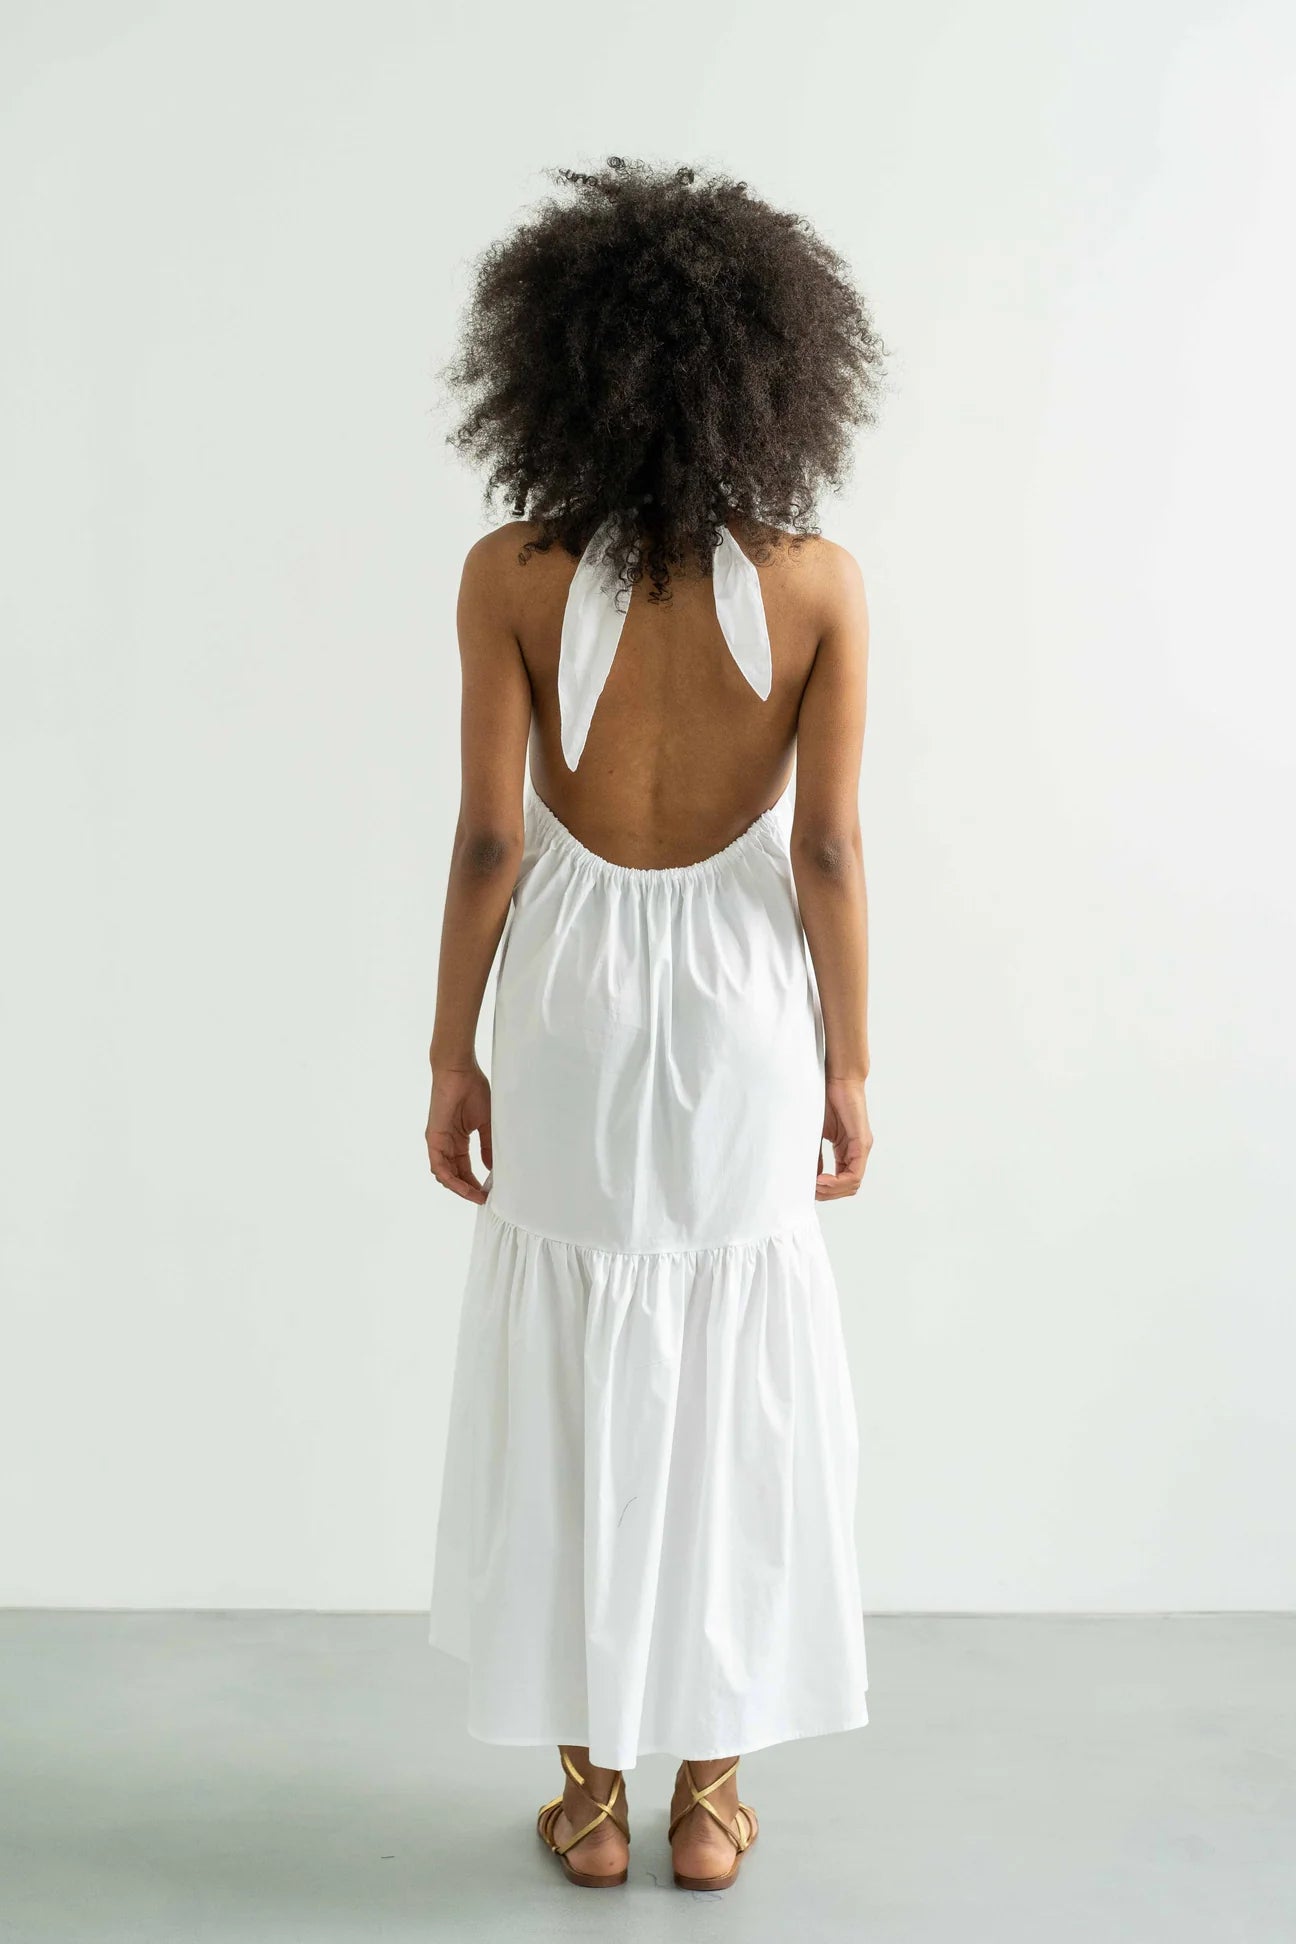 Inez Dress by Monica Nera